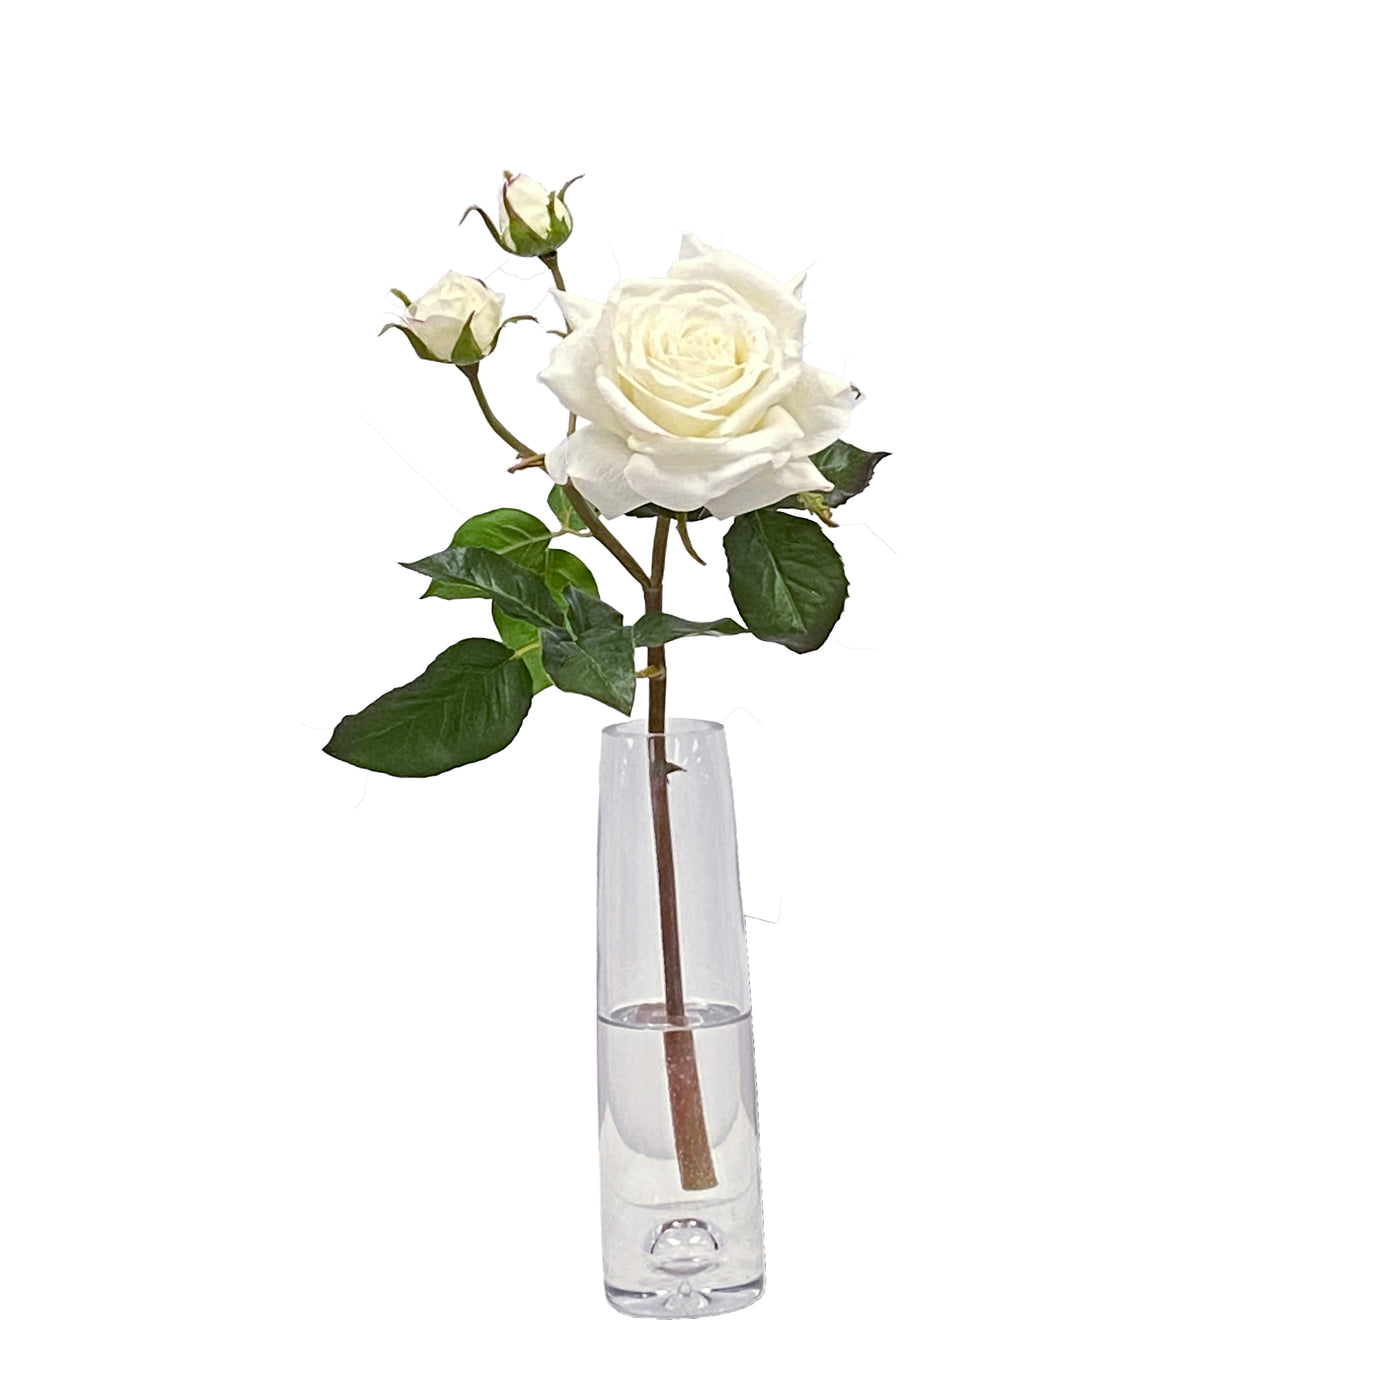 English Rose in Vase 19"